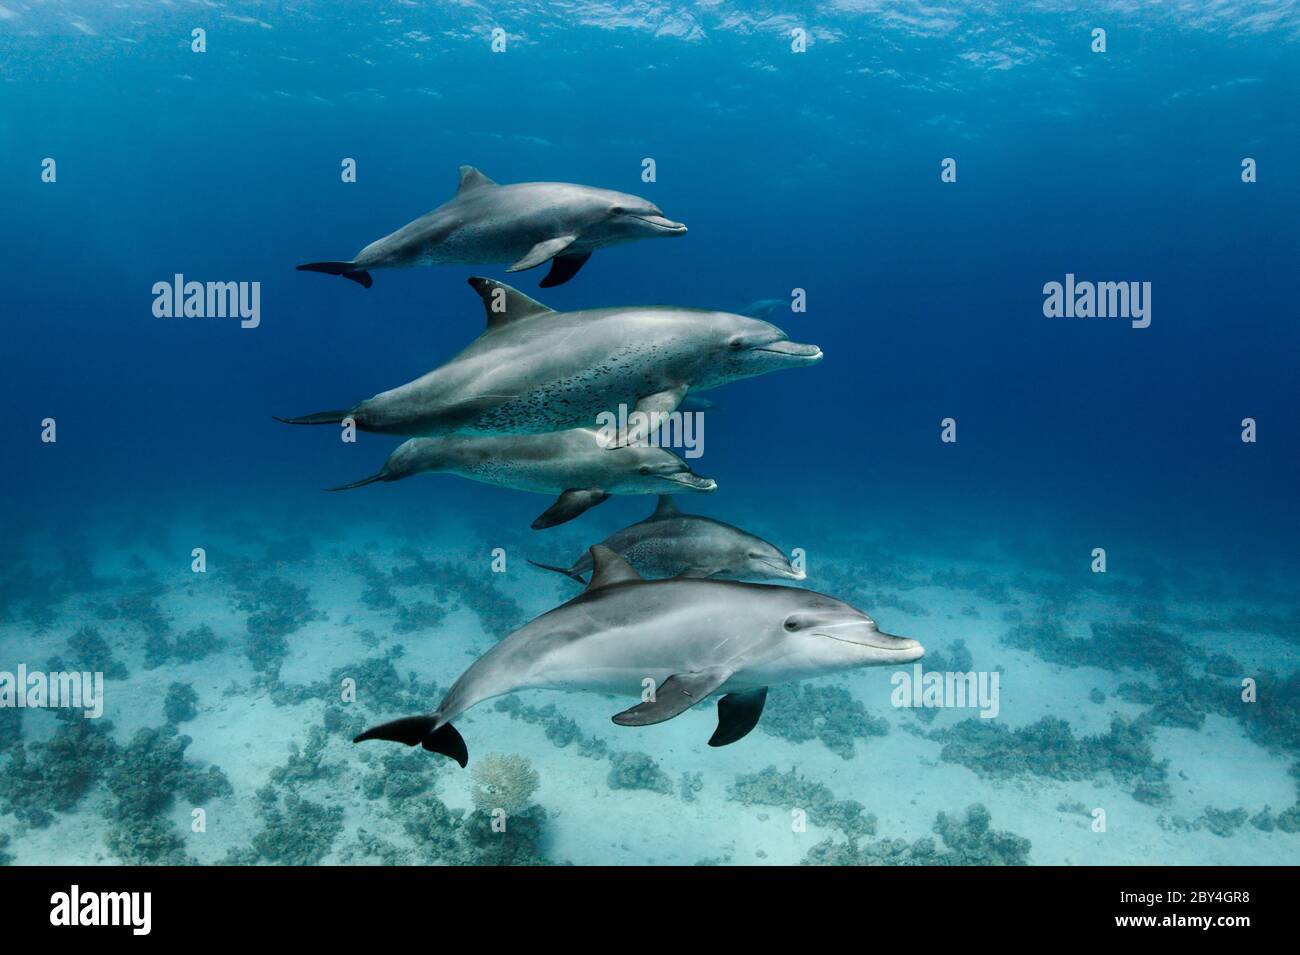 Un paio di delfini tursiopi selvatici indoPacifico (Tursiops aduncus) sta giocando di fronte alla fotocamera subacquea nel Mar Rosso. Foto Stock